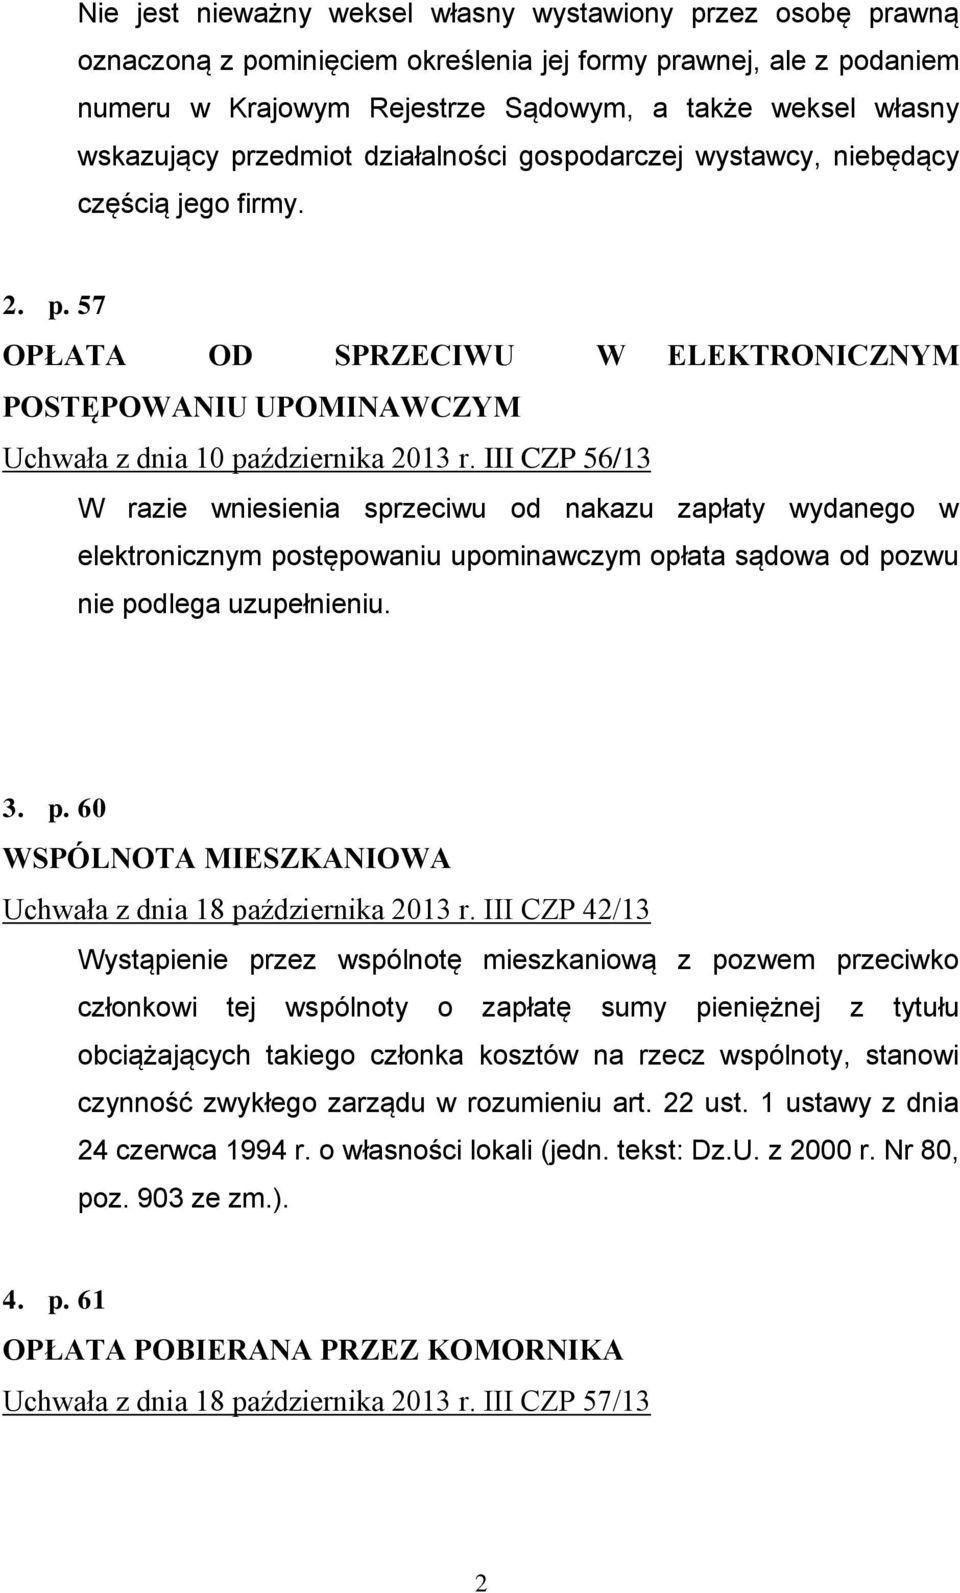 III CZP 56/13 W razie wniesienia sprzeciwu od nakazu zapłaty wydanego w elektronicznym postępowaniu upominawczym opłata sądowa od pozwu nie podlega uzupełnieniu. 3. p. 60 WSPÓLNOTA MIESZKANIOWA Uchwała z dnia 18 października 2013 r.